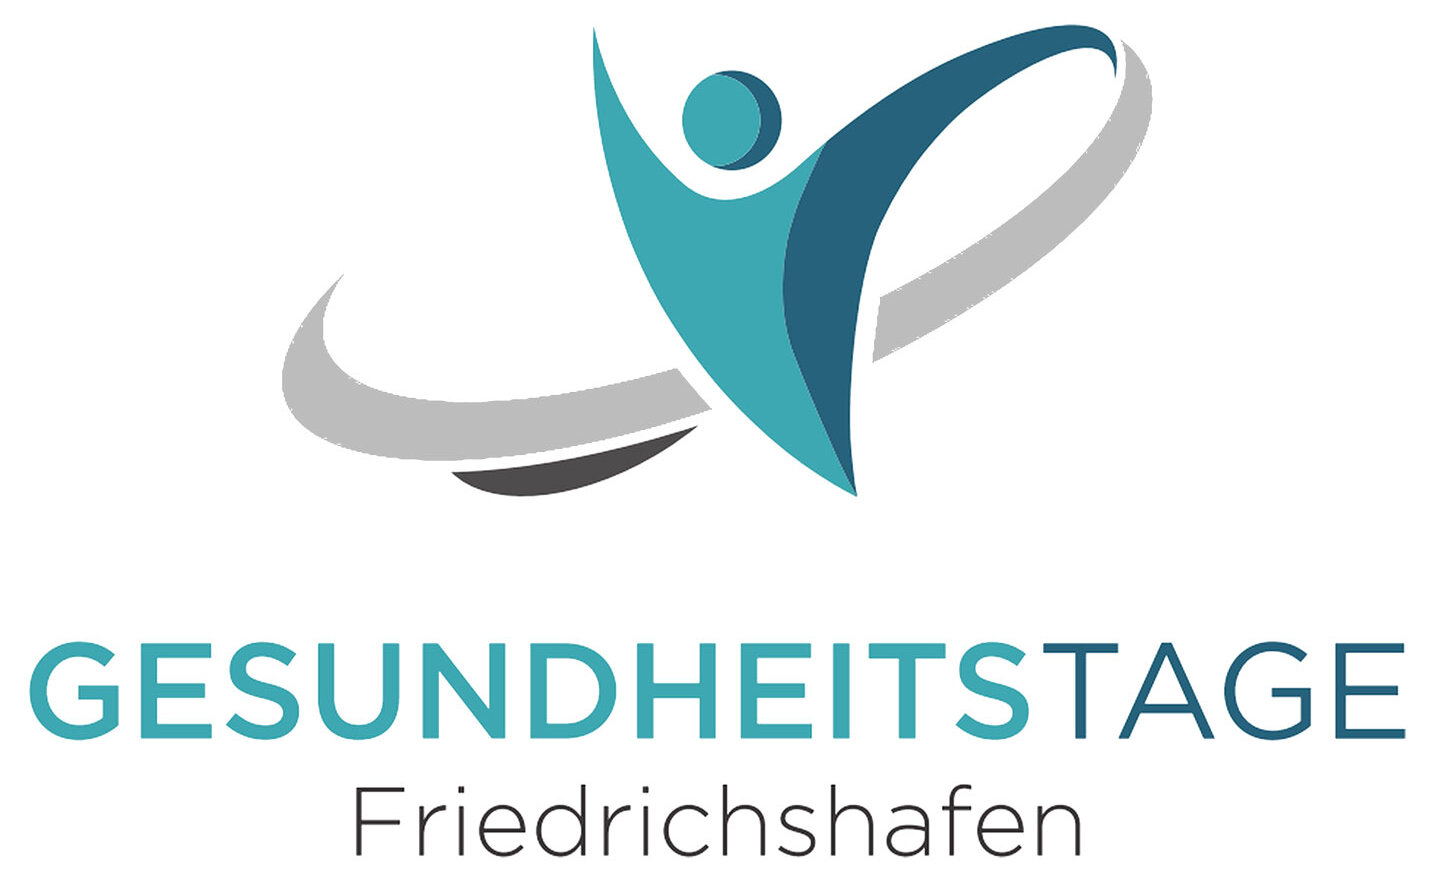 Gesundheitstage Friedrichshafen 2021